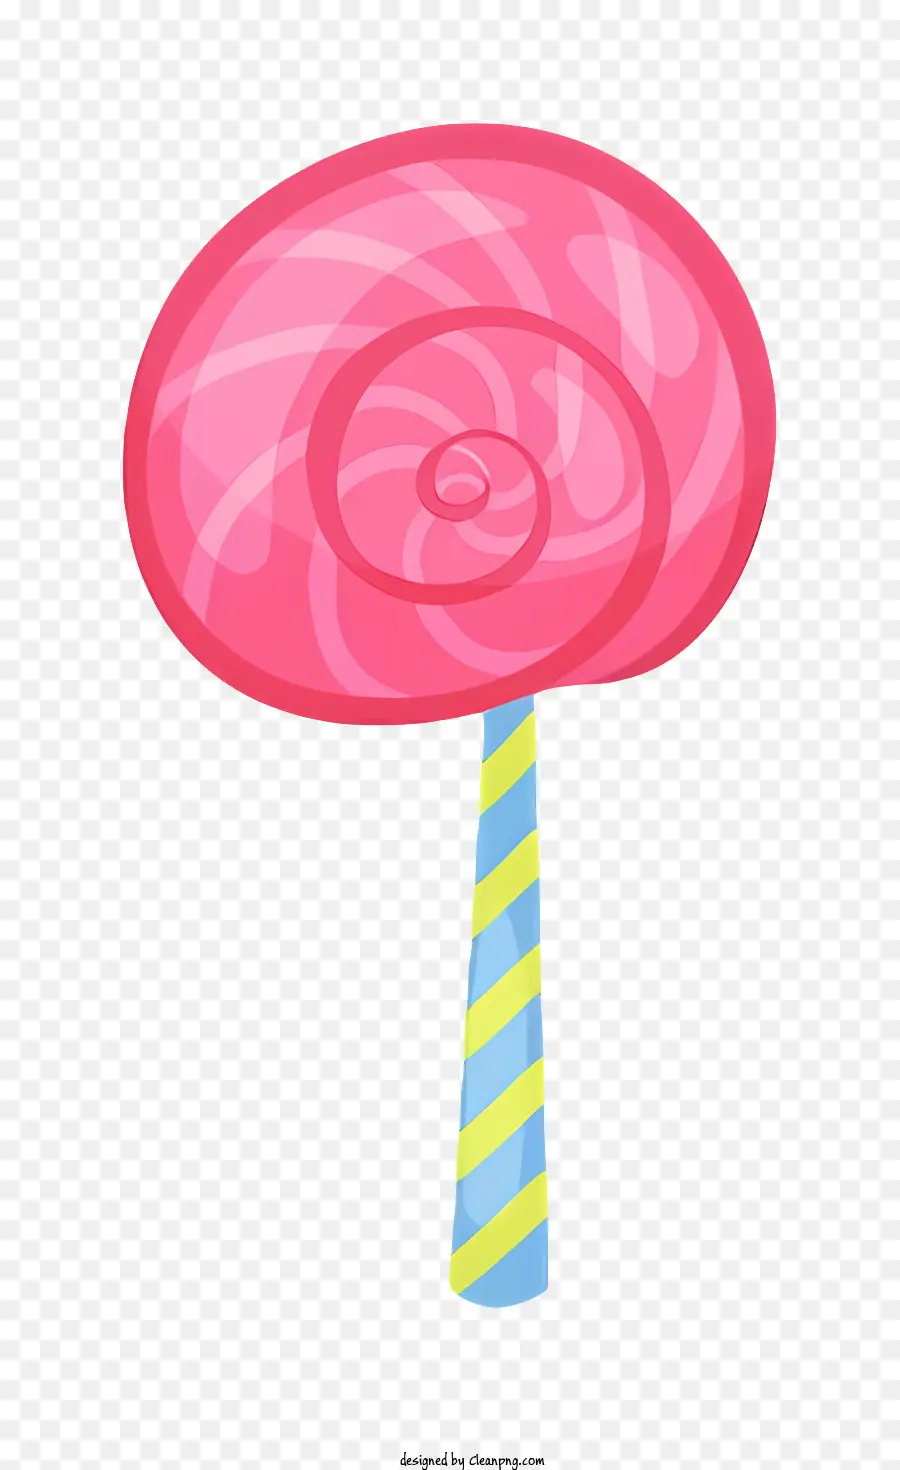 cartone animato lollipop rosa grande lecca lecca -lecca lecca lecca appiccicosa - Grande lecca -lecca rosa con strisce gialle e blu